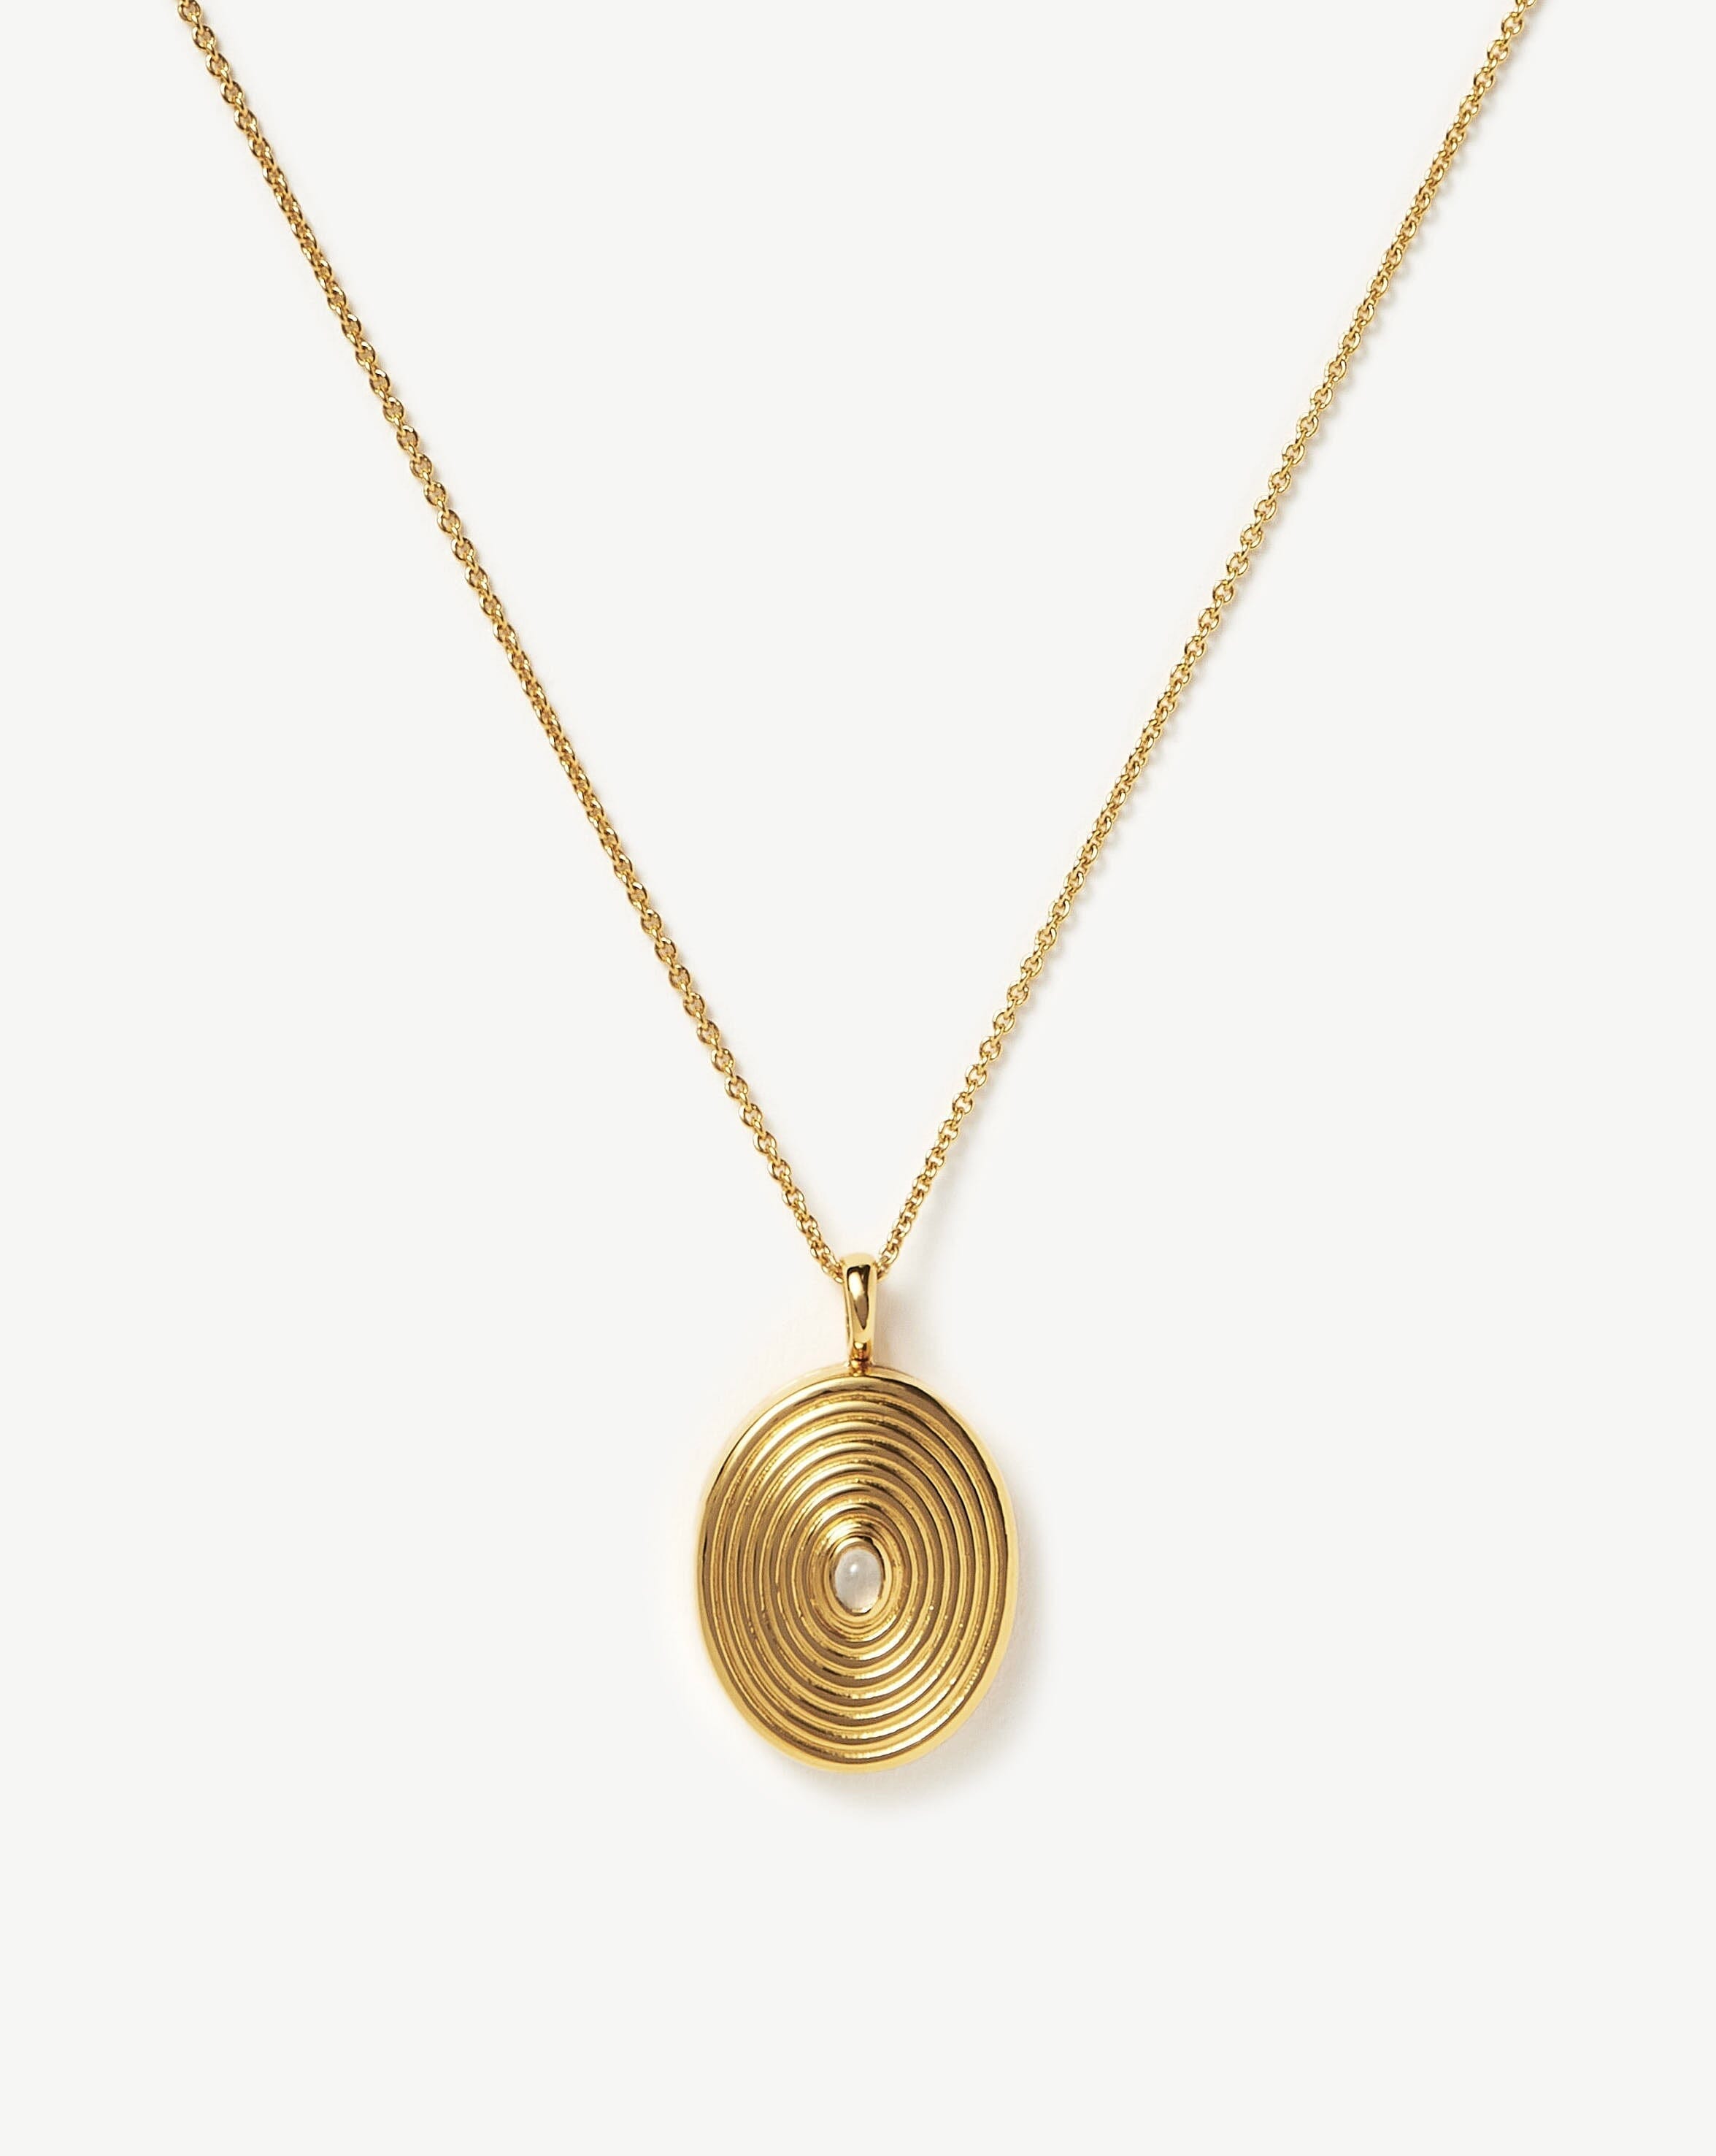 Missoma Engravable Oval Ridge Locket Pendant Necklace | Sterling Silver/Rainbow Moonstone